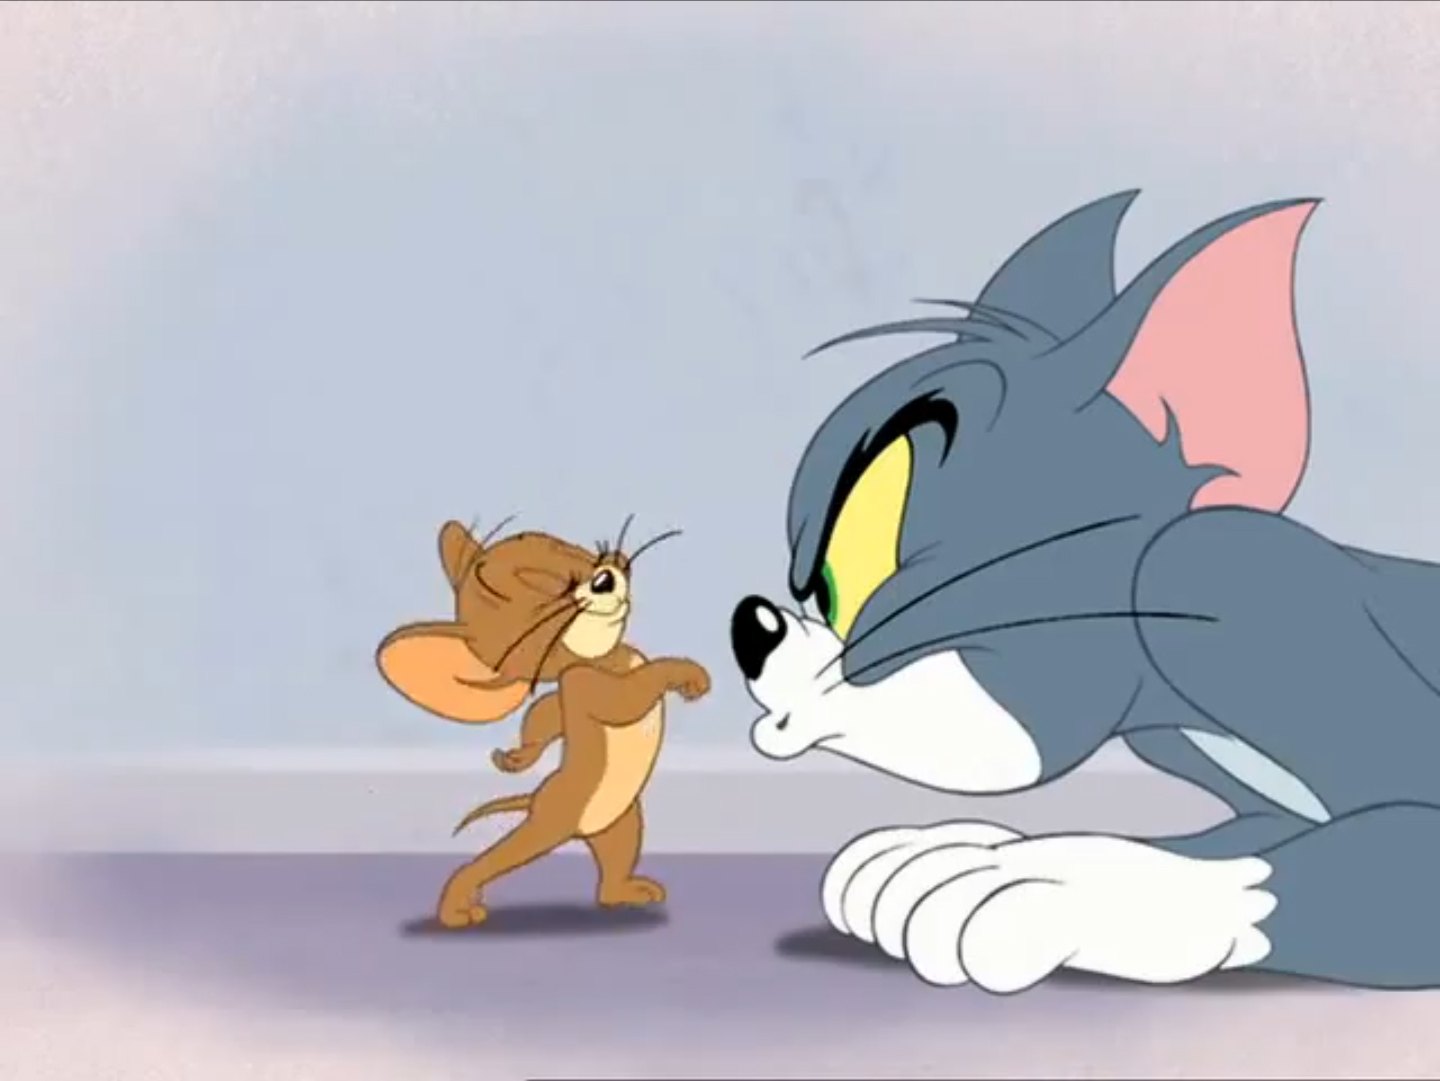 Том и джерри маленькие 2014 мультфильма. Том и Джерри Tom and Jerry. Том и Джерри Дисней. Том и Джерри (Tom and Jerry) 1940.